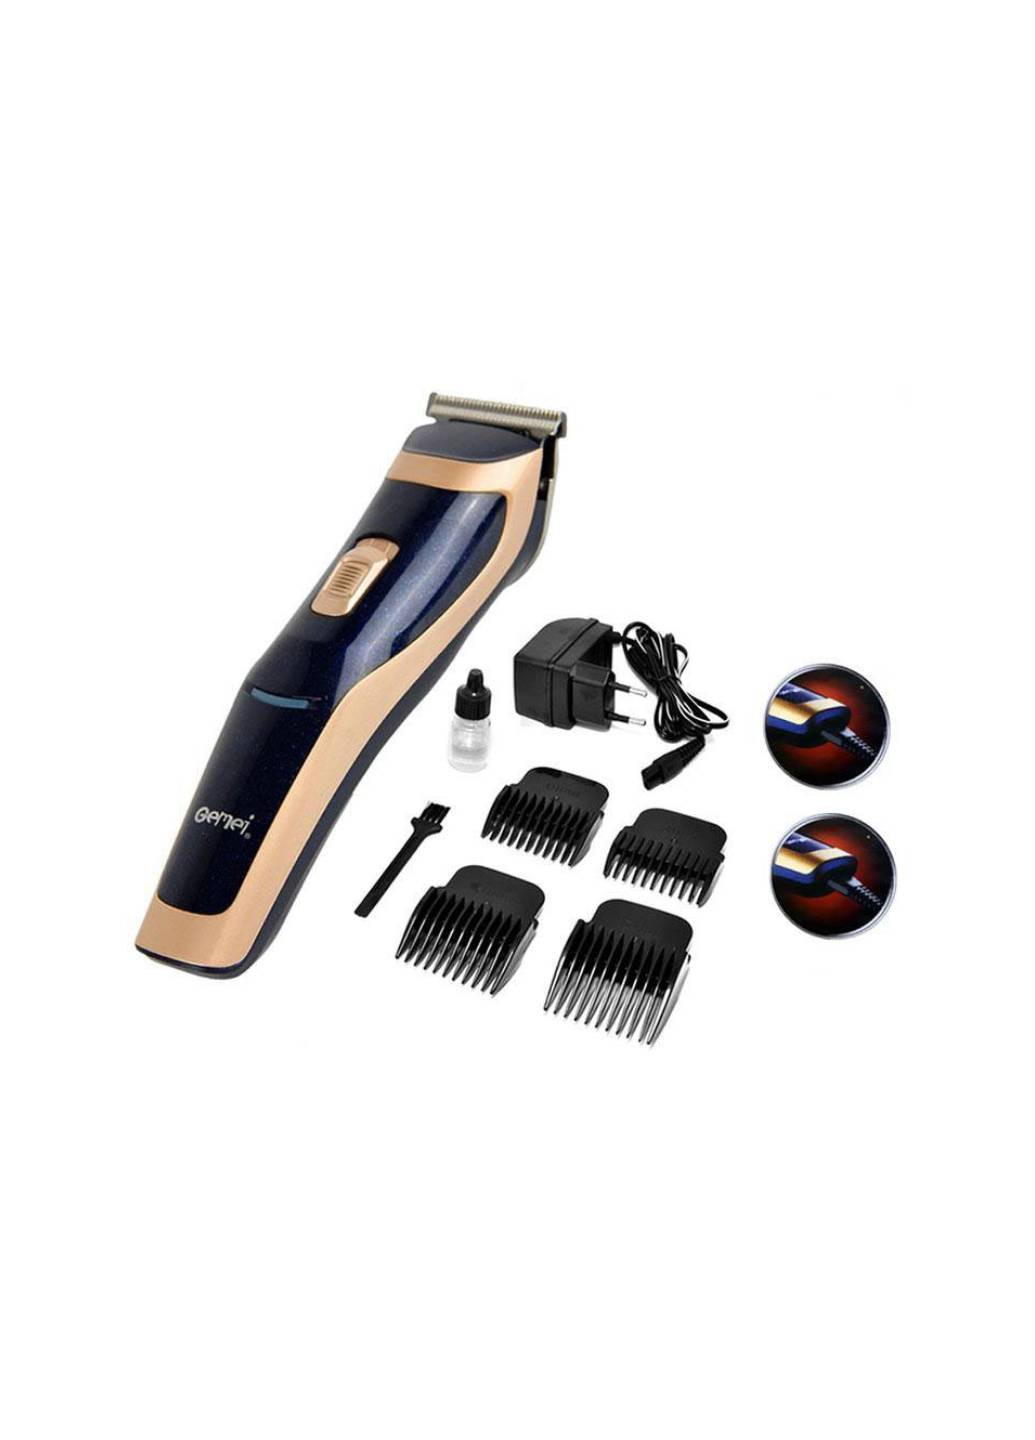 Машинка для стрижки волос GM-6005 Professional 3 Вт аккумуляторная титановые ножи + 4 насадки и щетка Gemei (254255887)